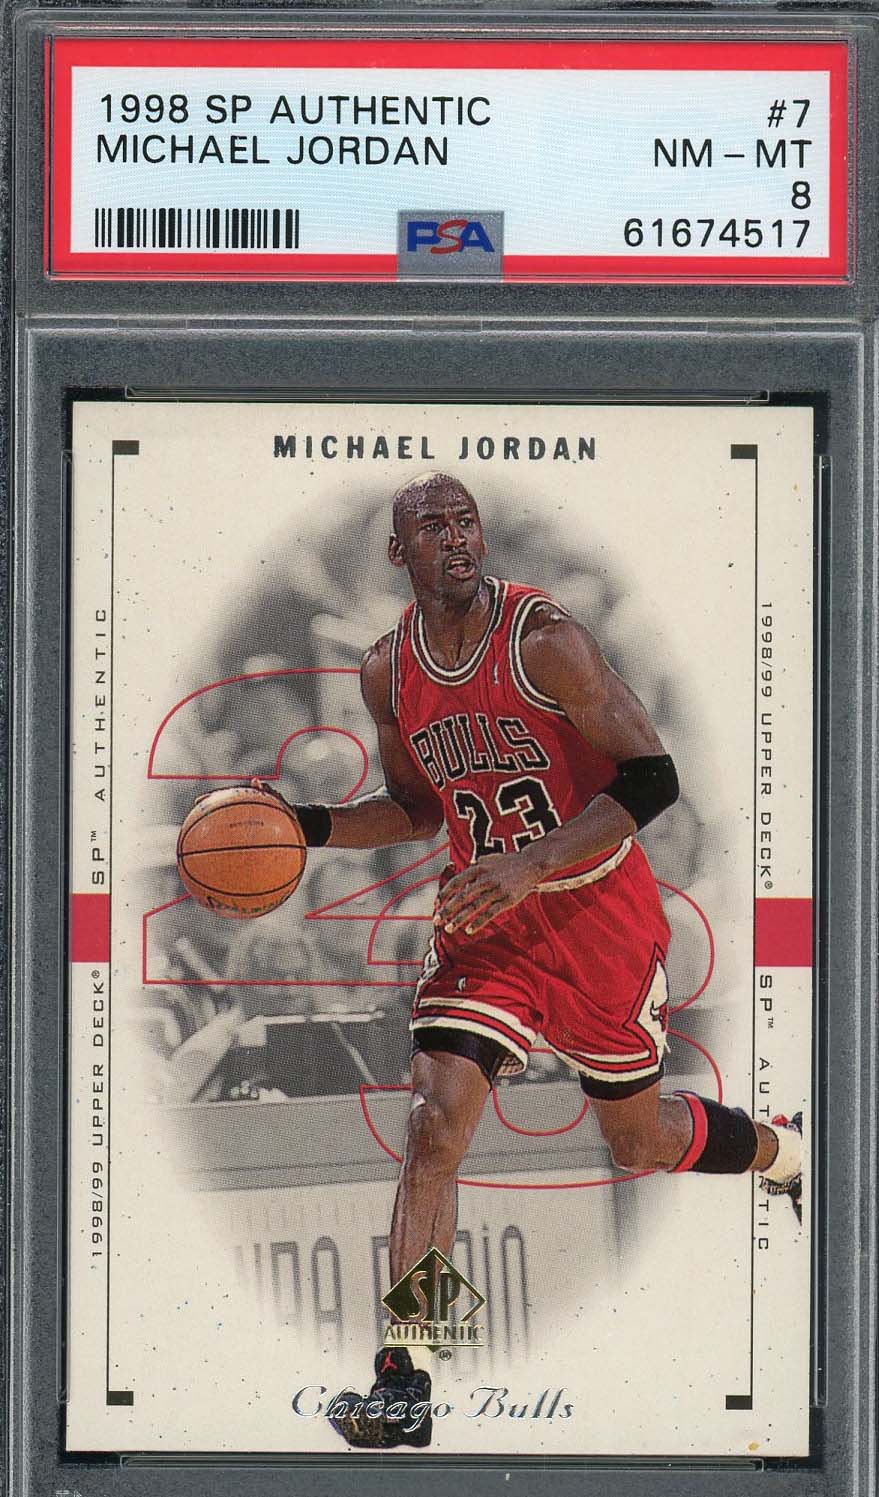 マイケル ジョーダン 1998 アッパー デッキ SP オーセンティック バスケットボール カード #7 グレード PSA 8